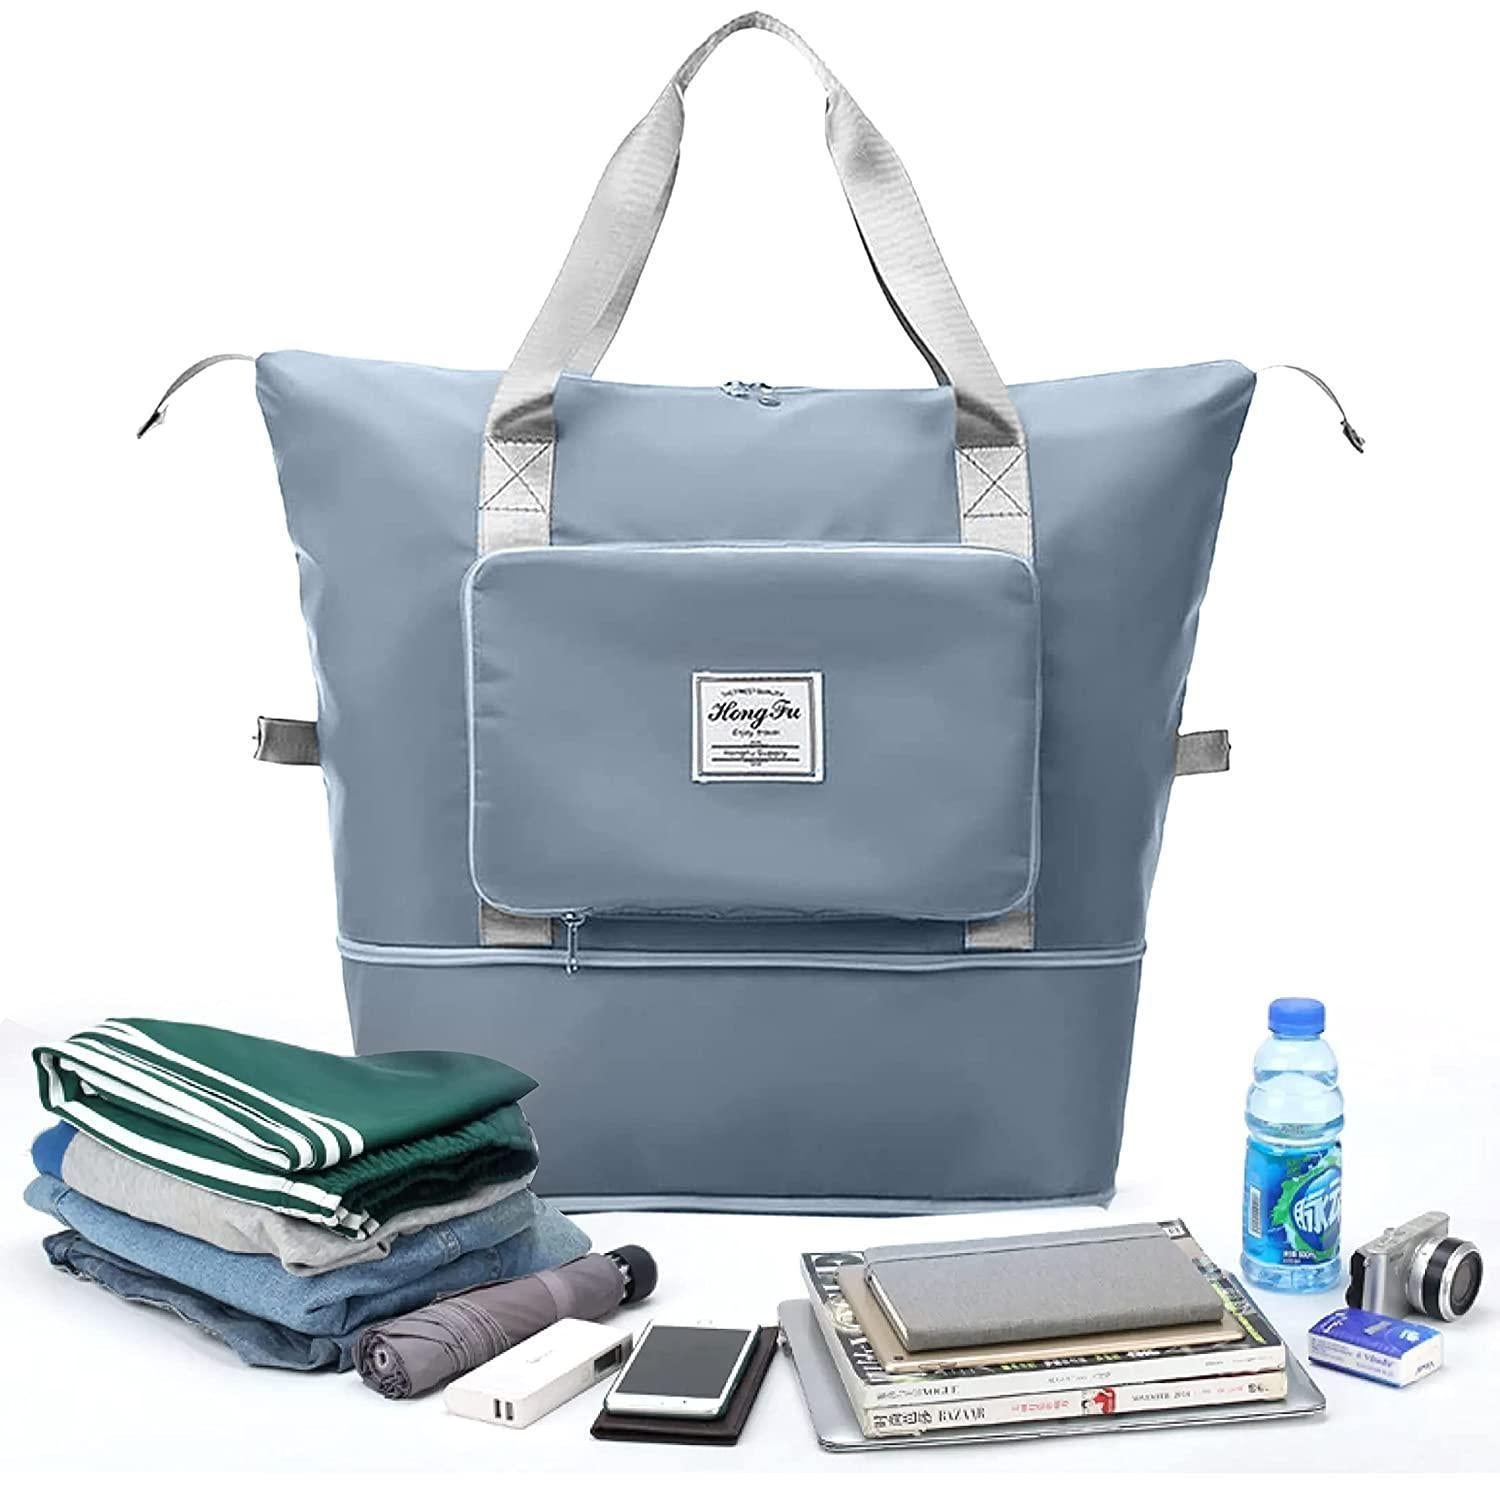 Bag- Foldable Large Capacity Travel Duffel Bag